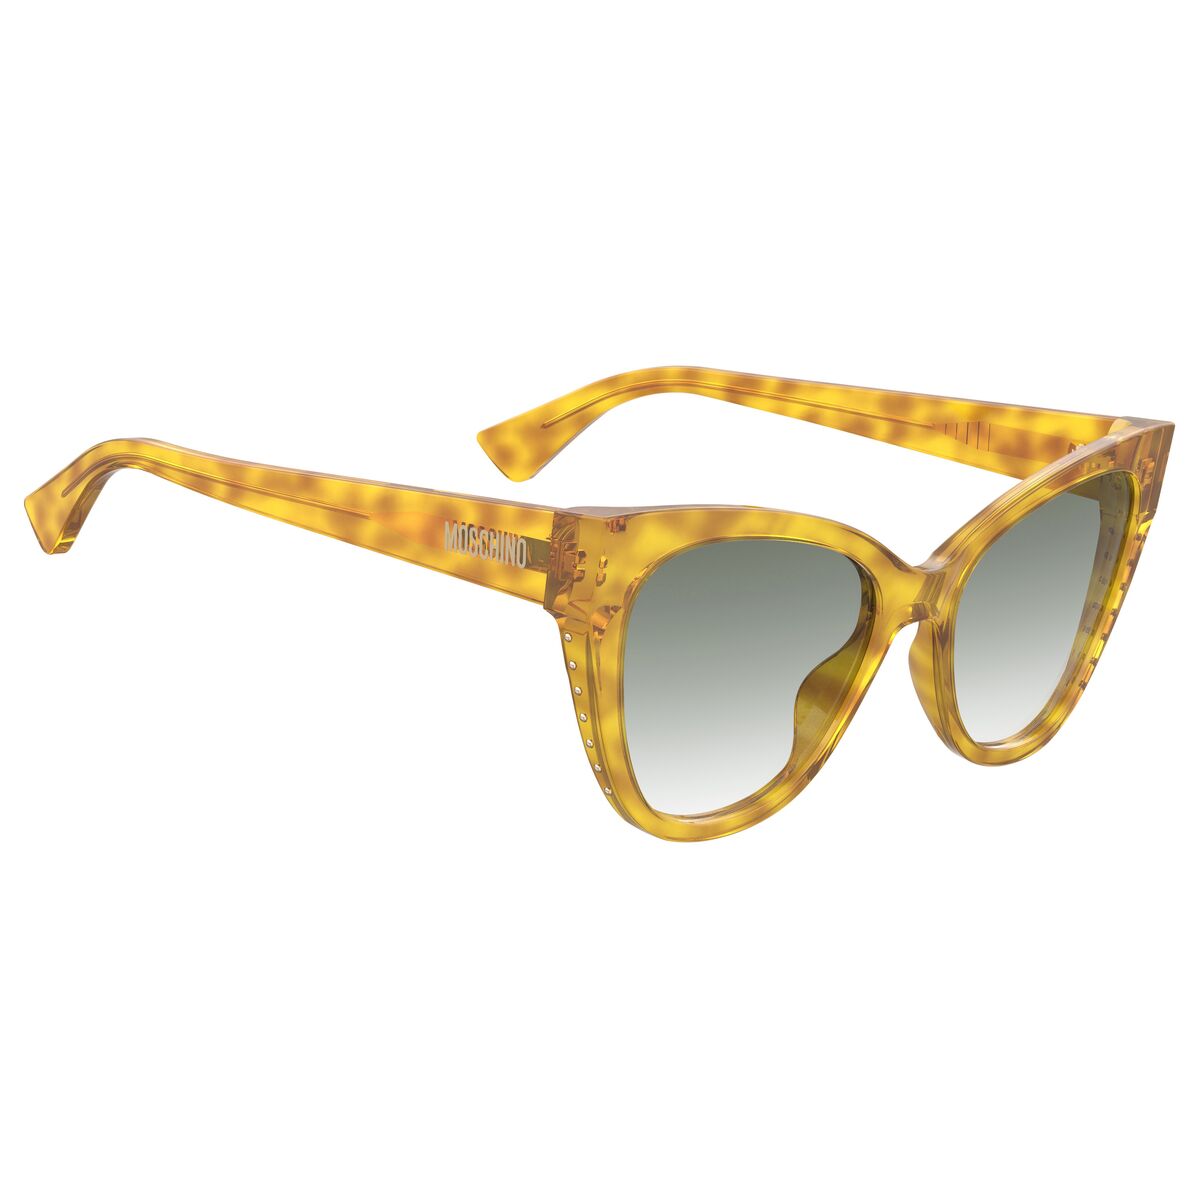 Kaufe Damensonnenbrille Moschino MOS056-S-XDP-9K bei AWK Flagship um € 83.00